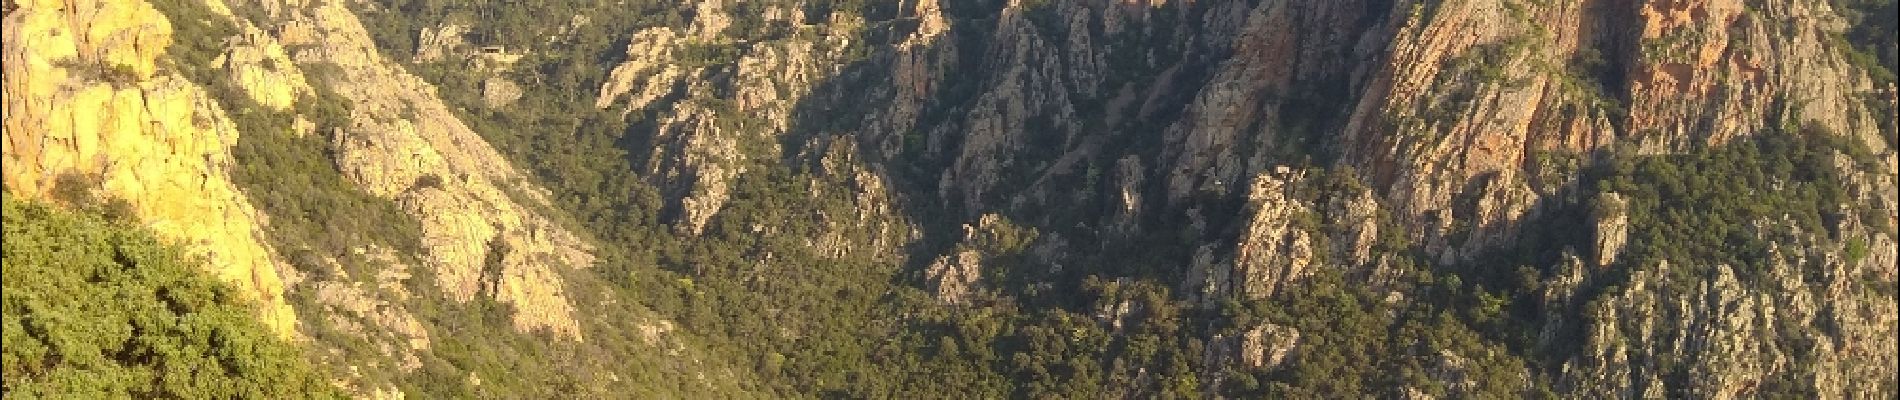 Tocht Stappen Ota - Corse 2018 sentier des gorges - Photo